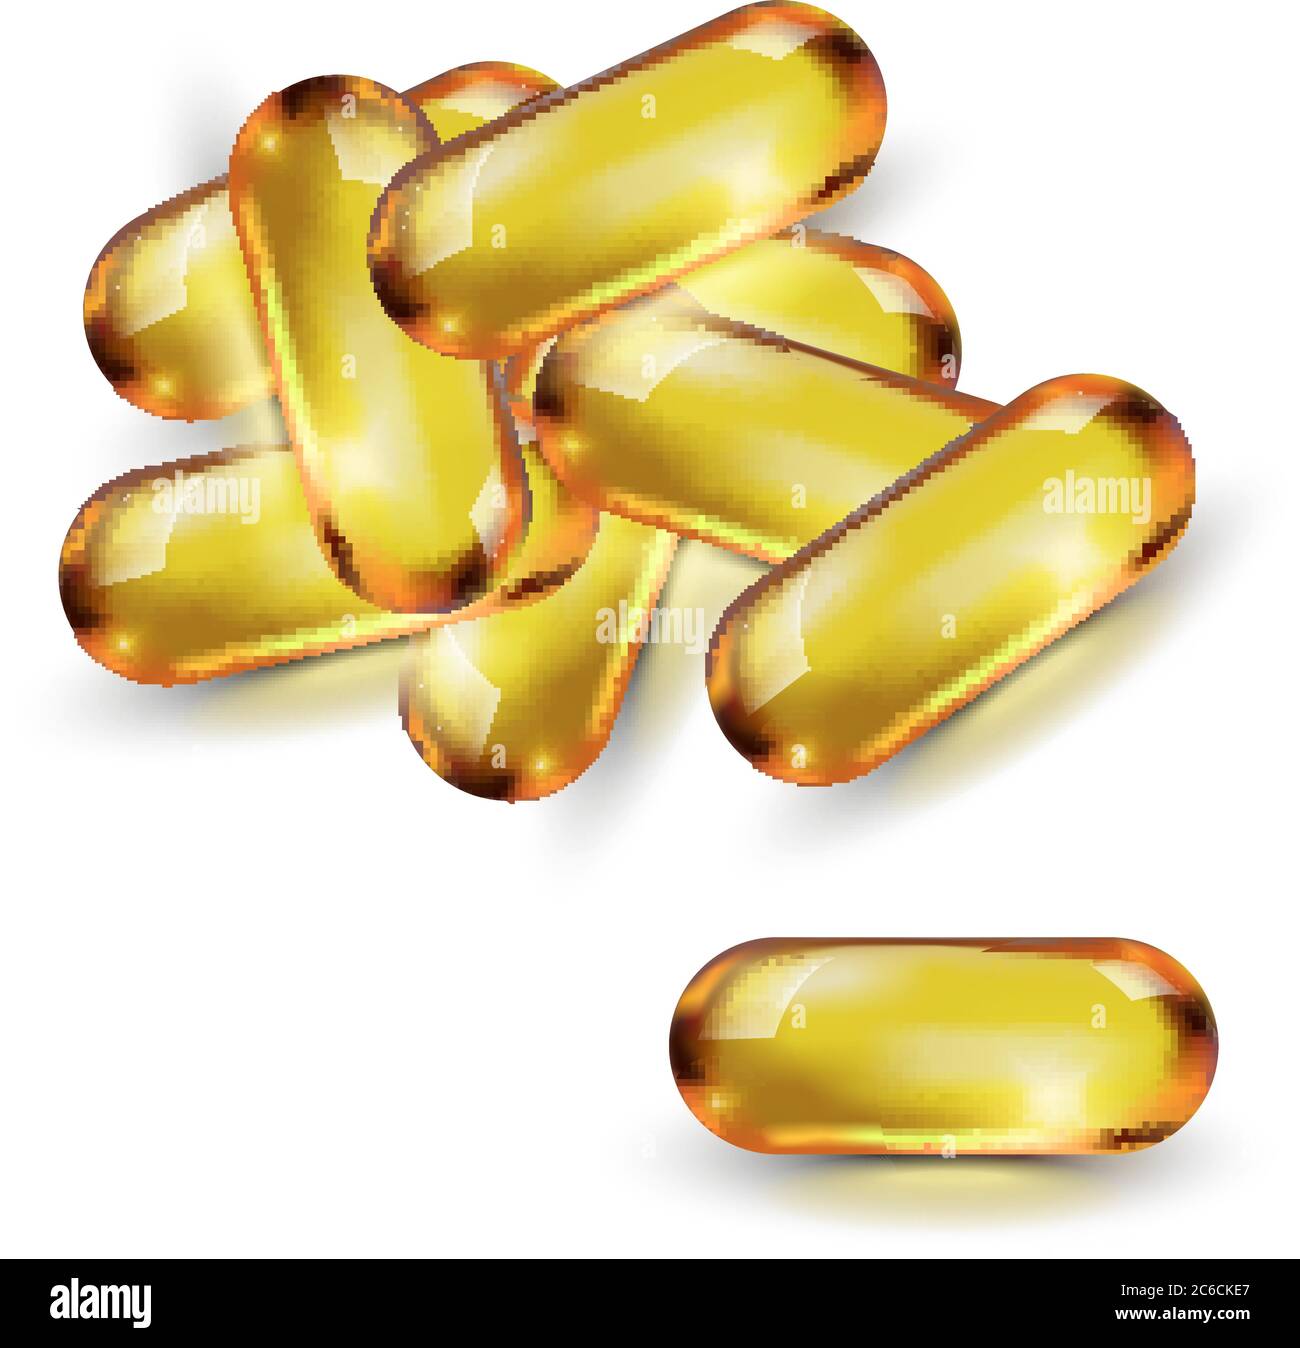 Öl goldene Kapsel in Vektor isoliert auf weißem Hintergrund. Kosmetische Pille Kapsel von Vitamin E, A, Argan-Mandelöl, Omega-3, Fisch. Stock Vektor